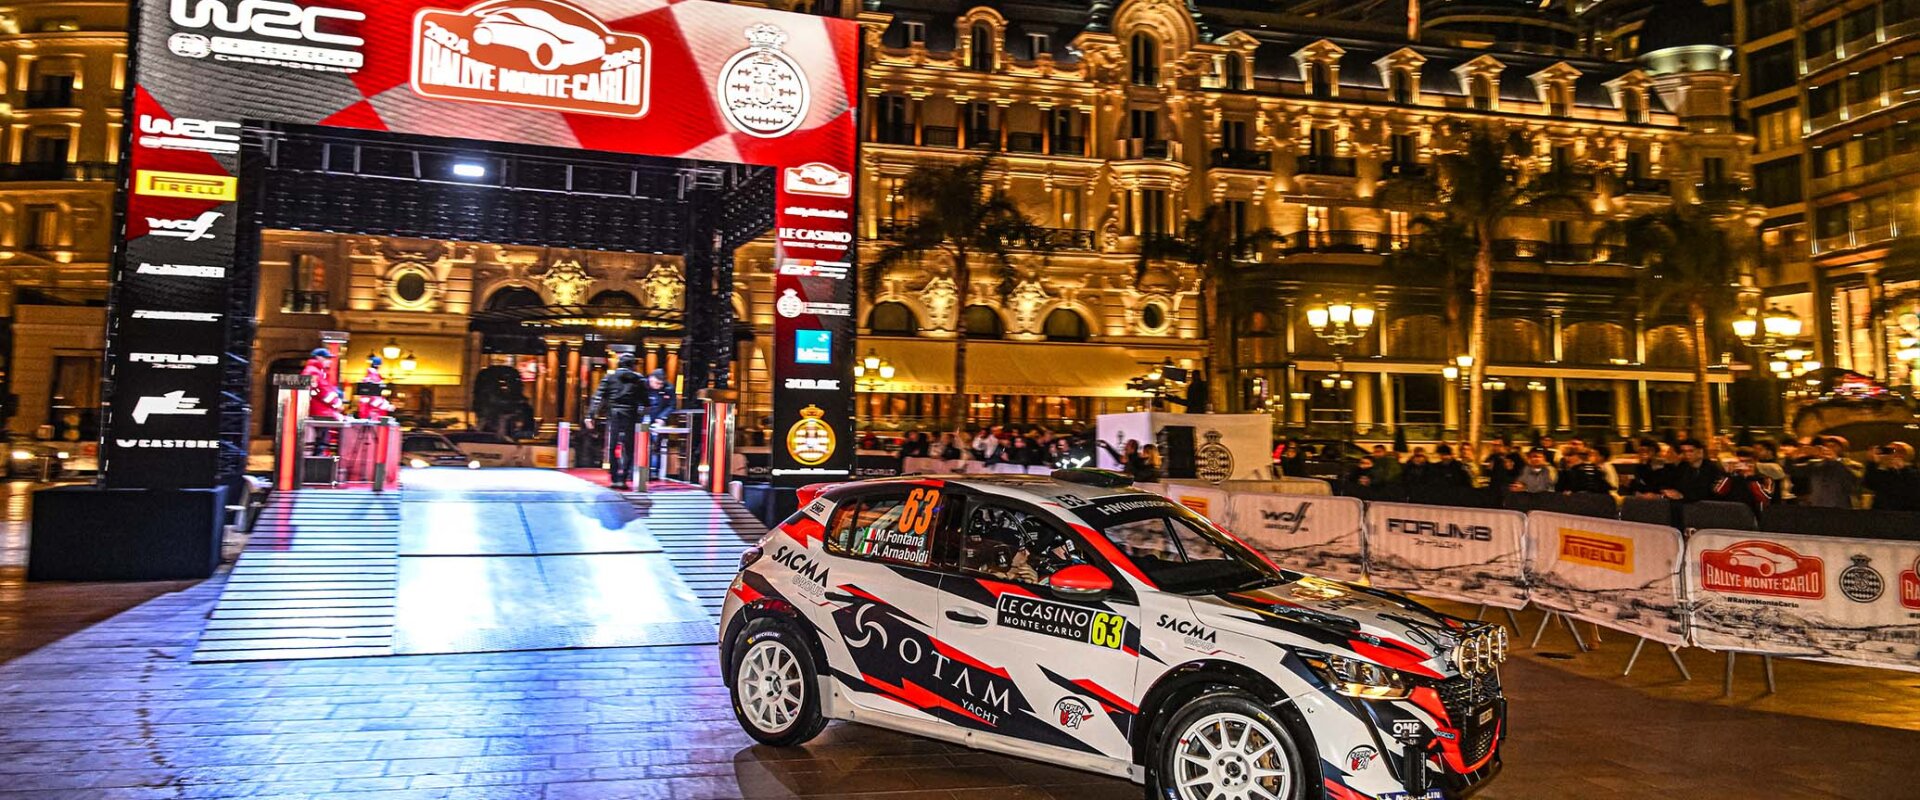 HMI - Italian Rally Team #1